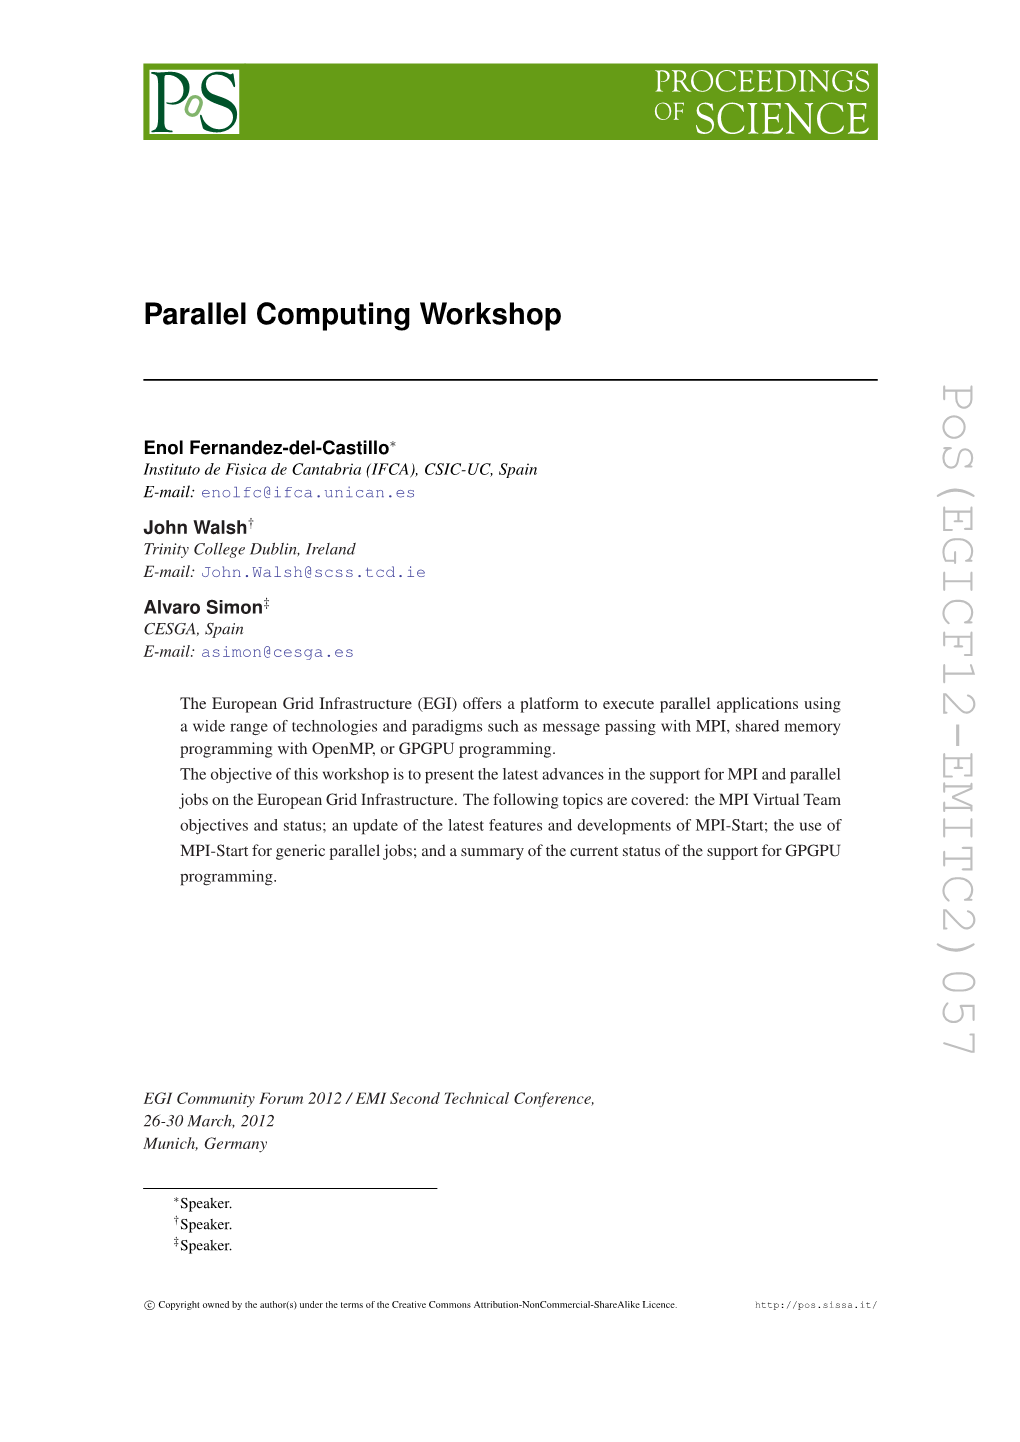 Parallel Computing Workshop Instituto De Fisica De Cantabria (IFCA),E-Mail: CSIC-UC, Spain Trinity College Dublin, Ireland E-Mail: Pos(EGICF12-EMITC2)057 ]